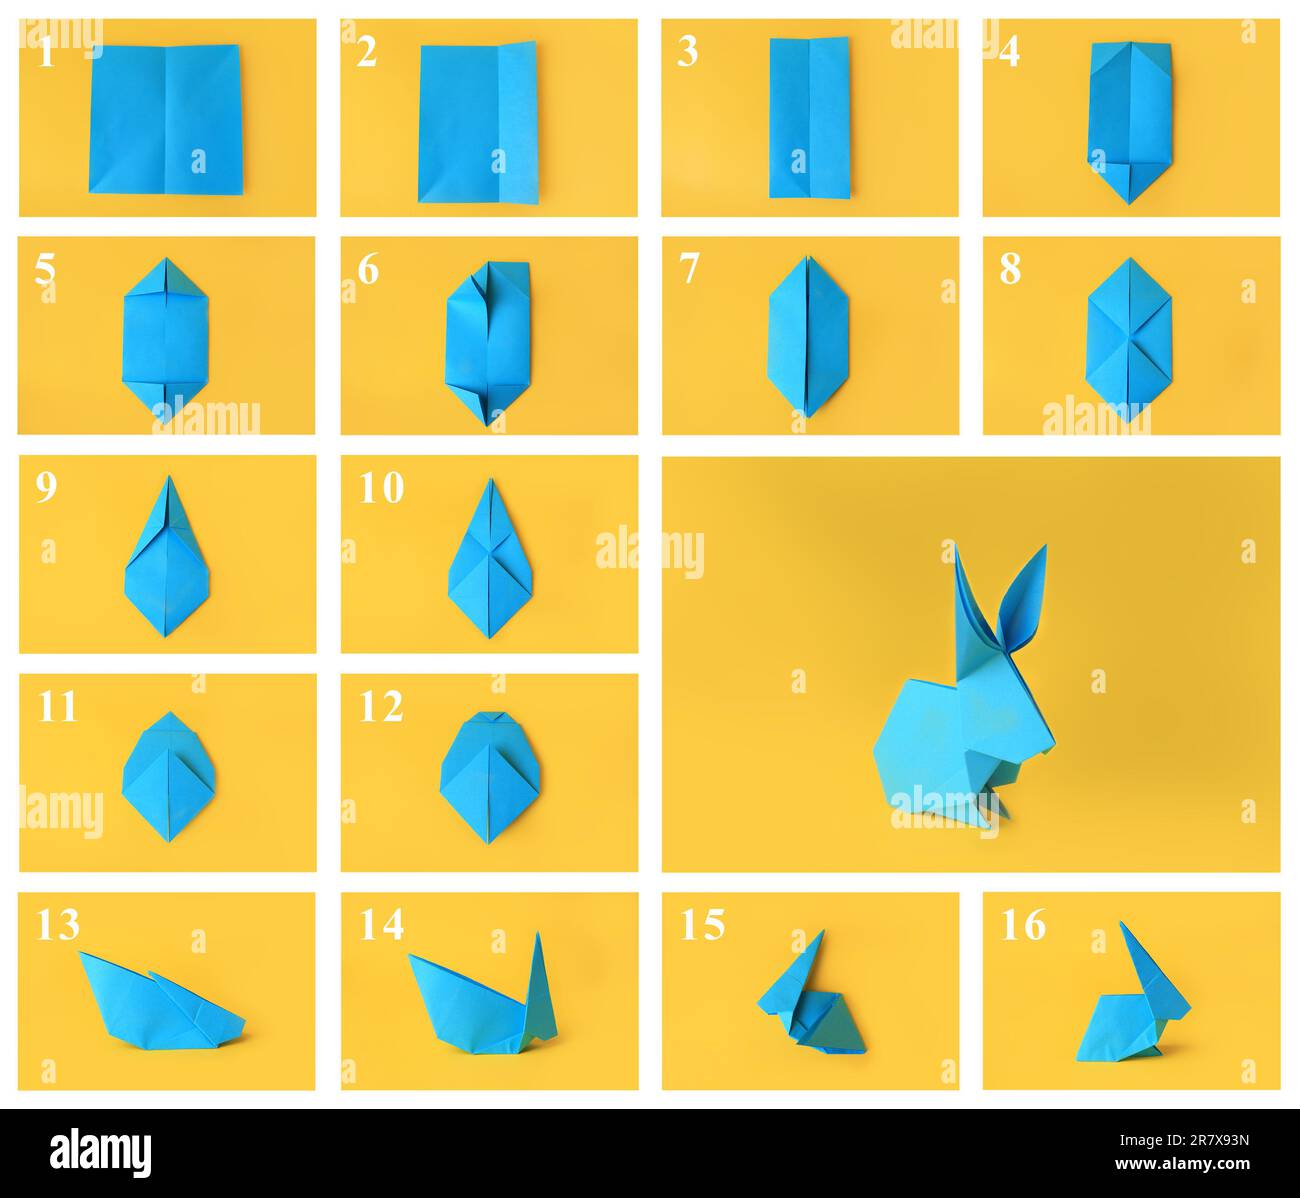 Origami cuore facile da fare in 4 minuti